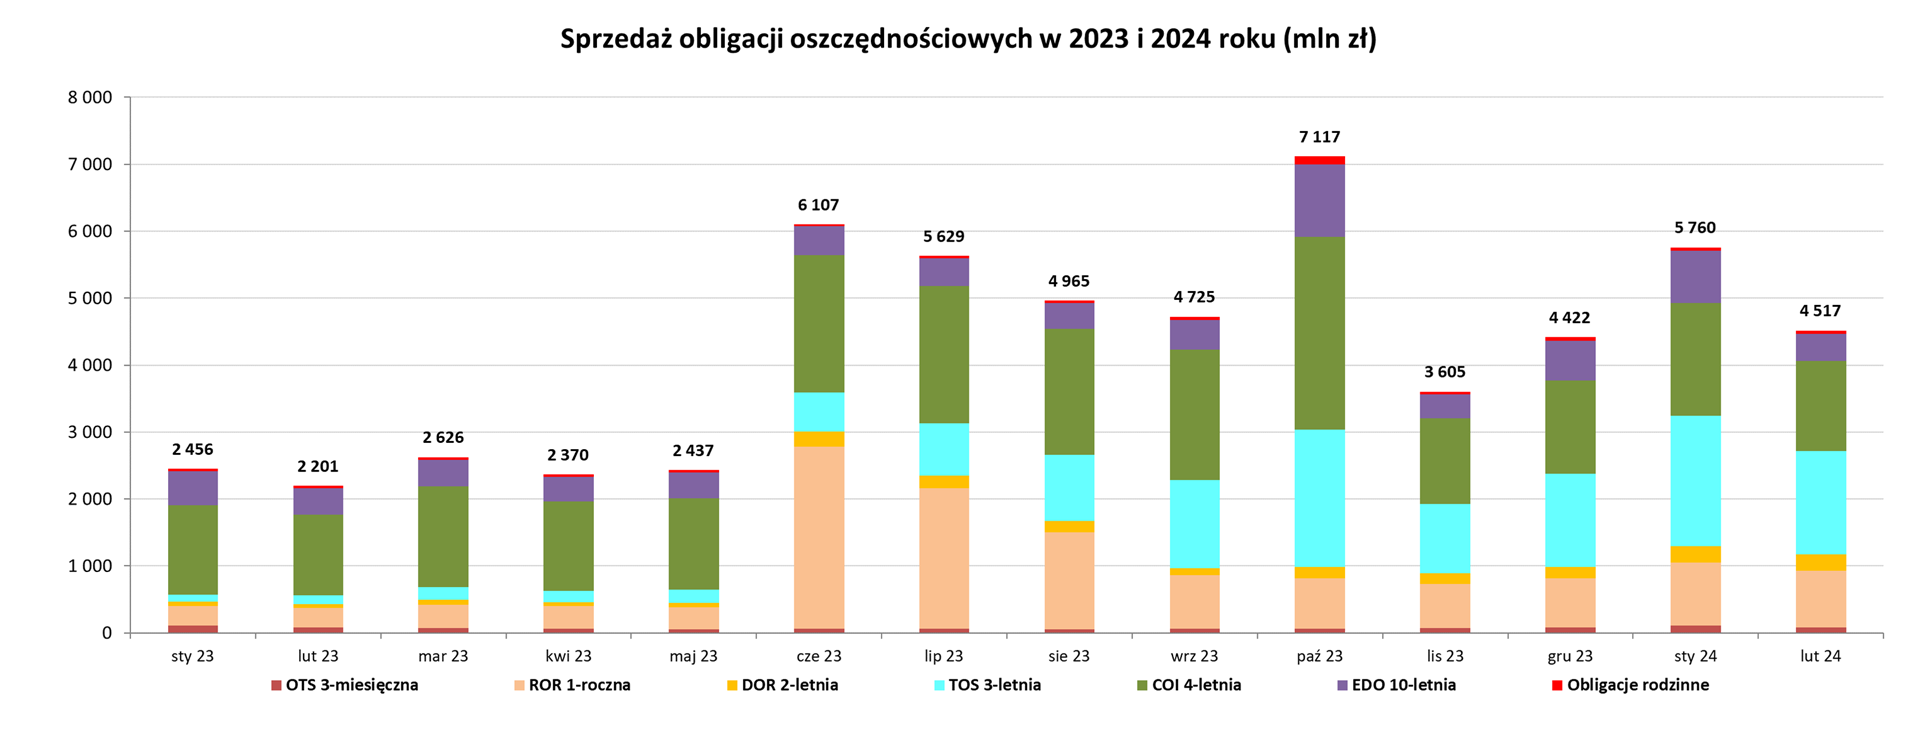 Wykres. Sprzedaż obligacji oszczędnościowych w 2023 i 2024 roku (mln zł)